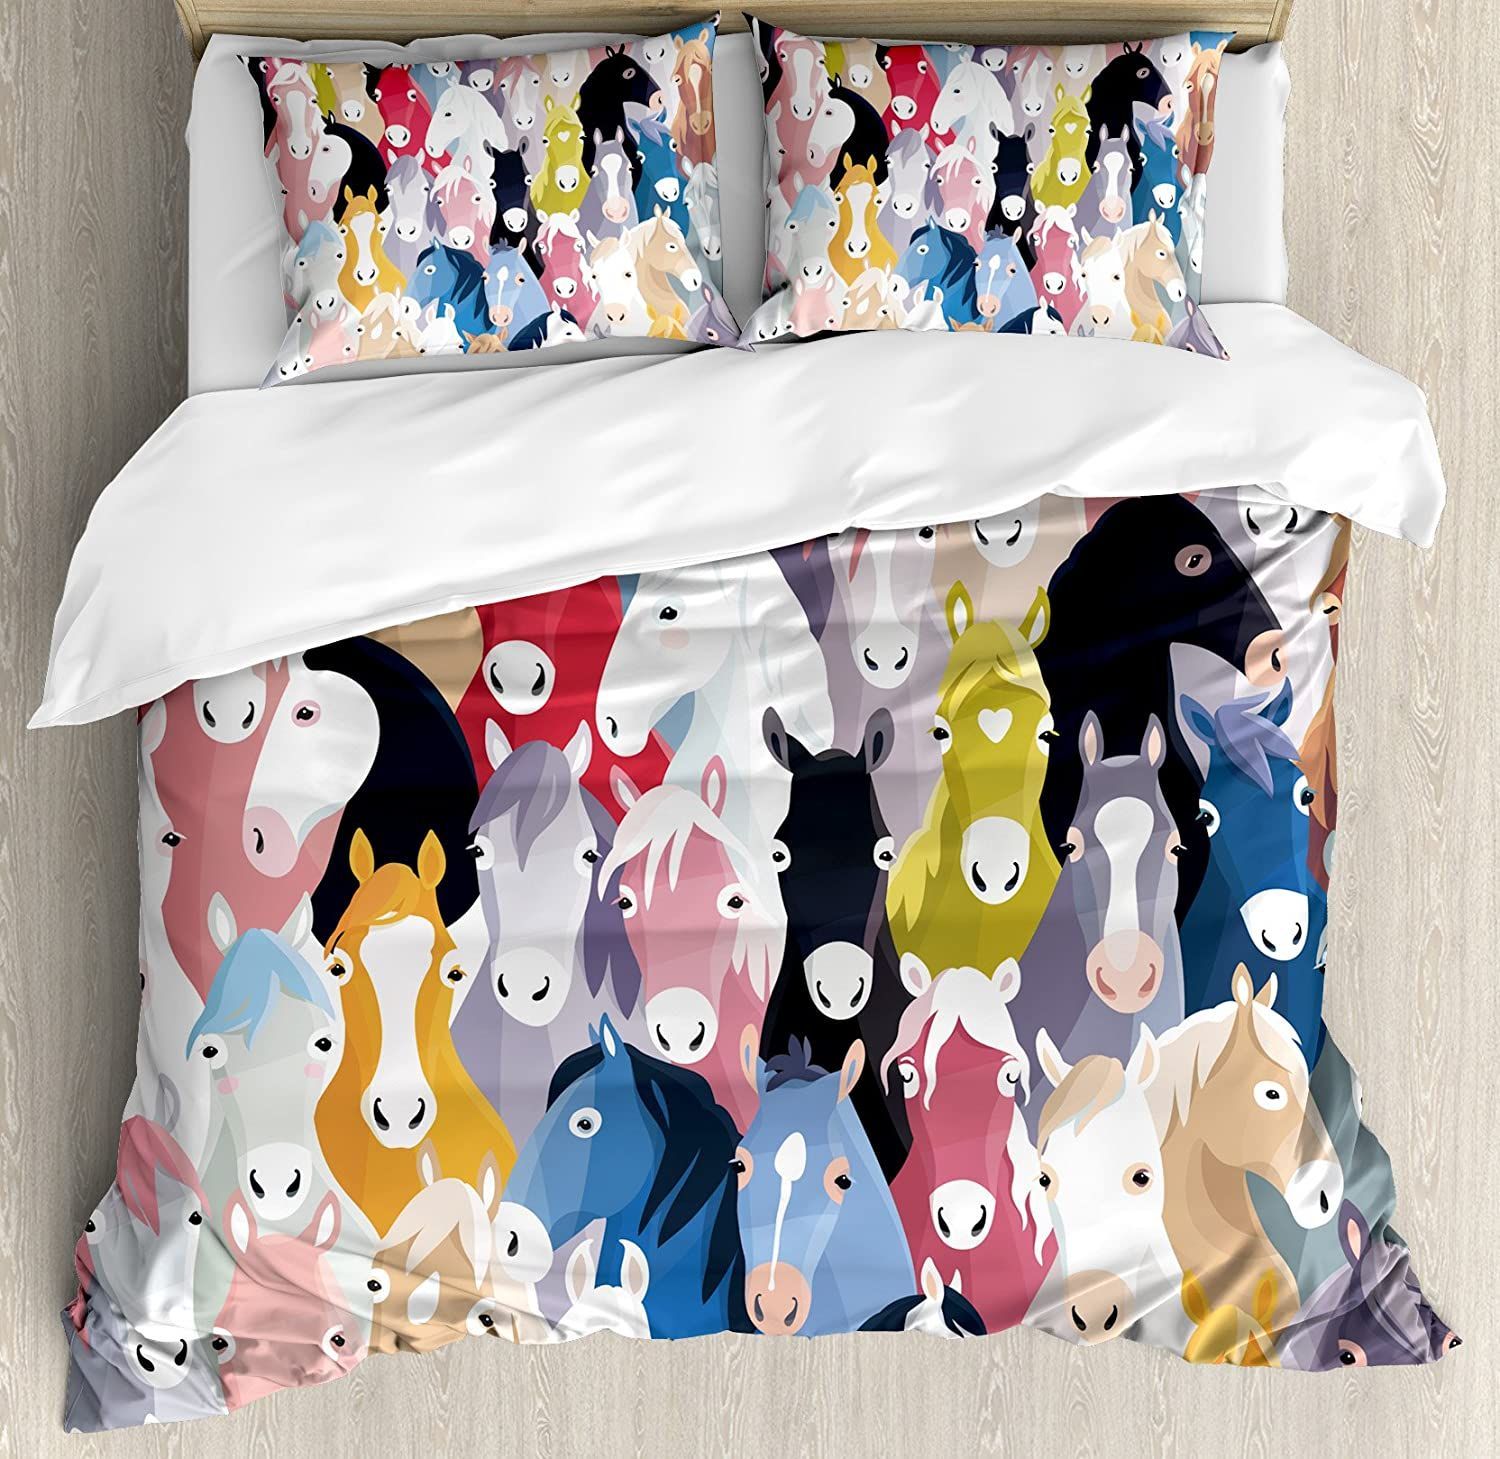 Multicolor Horses Pattern Bedding Set Bed Sheet Spread Comforter Duvet Cover Bedding Sets